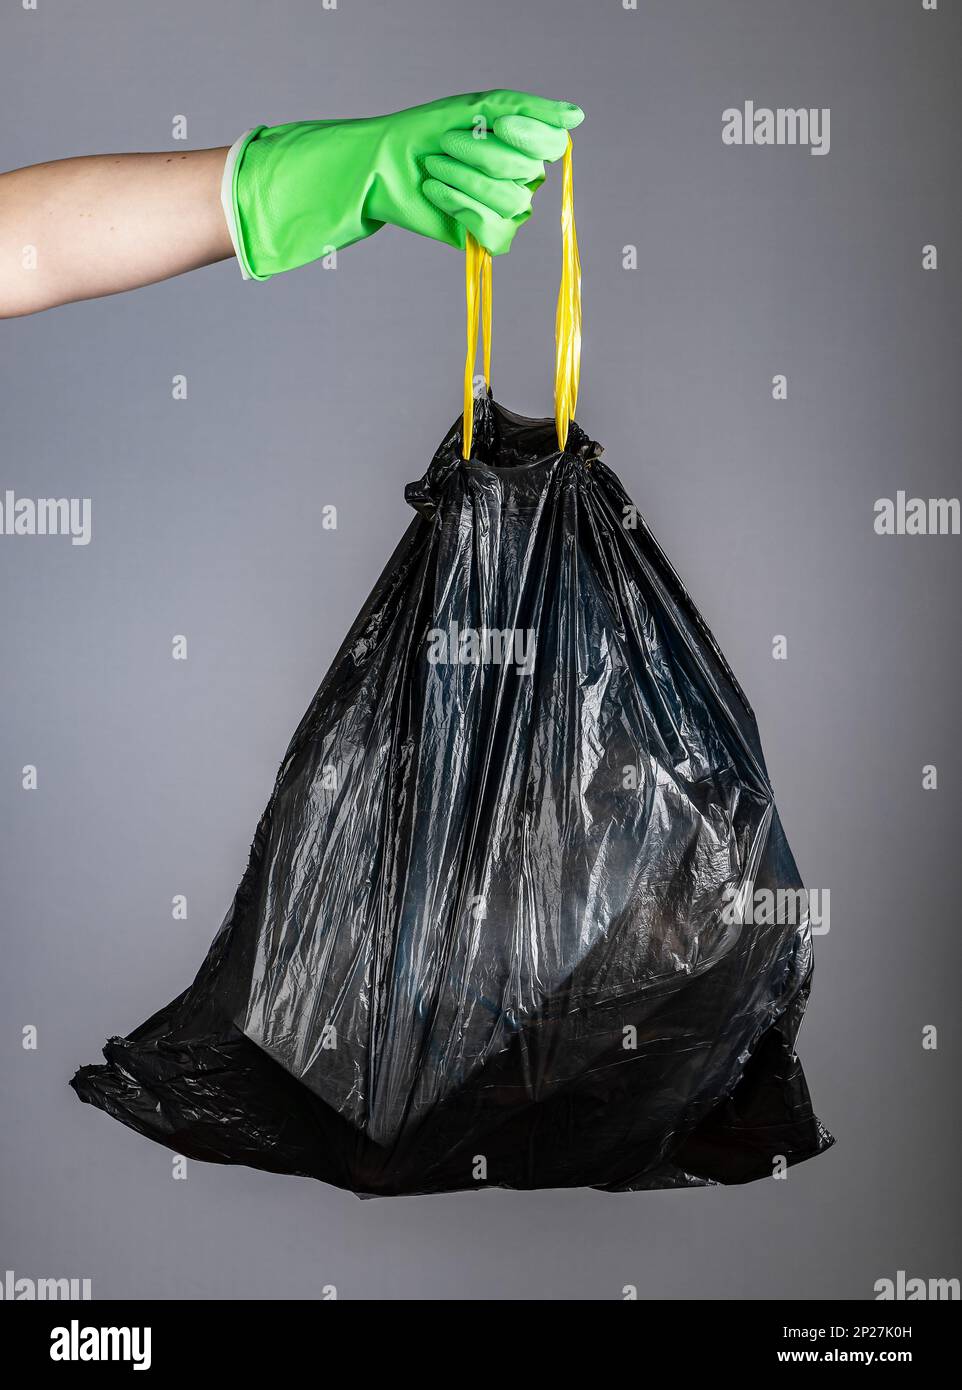 Handschuh mit Handschuhen, die Griffe aus schwarzem Kunststoff-Einweg-Müllbeutel  voller Müll, Abfall, Müll halten. Hausaufräumung, Deklutter-Konzept  Stockfotografie - Alamy